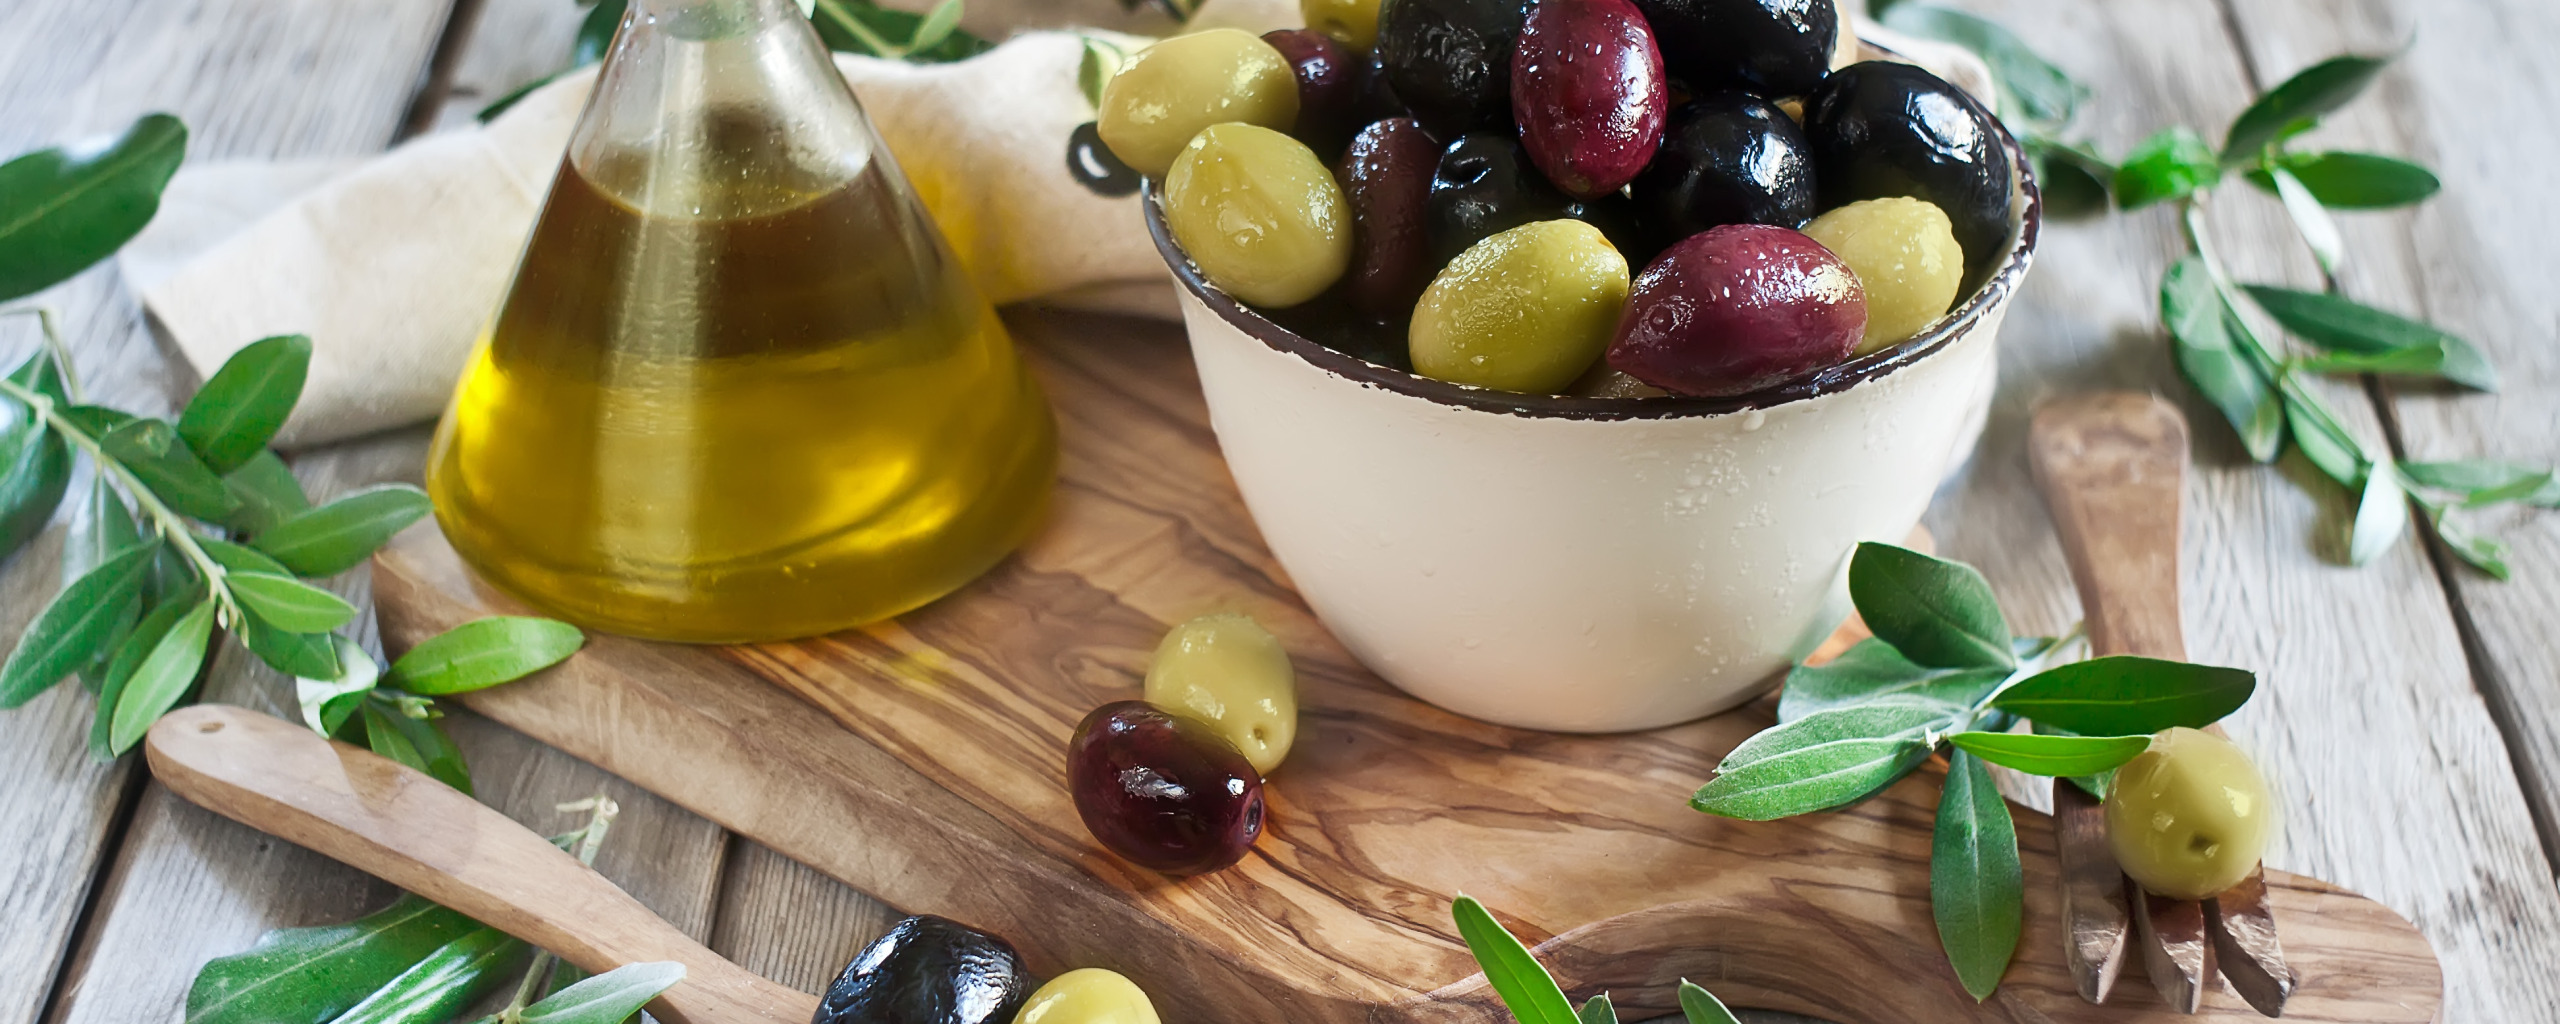 Оливки. Маслины. Оливковое масло и маслины. Оливки фото.